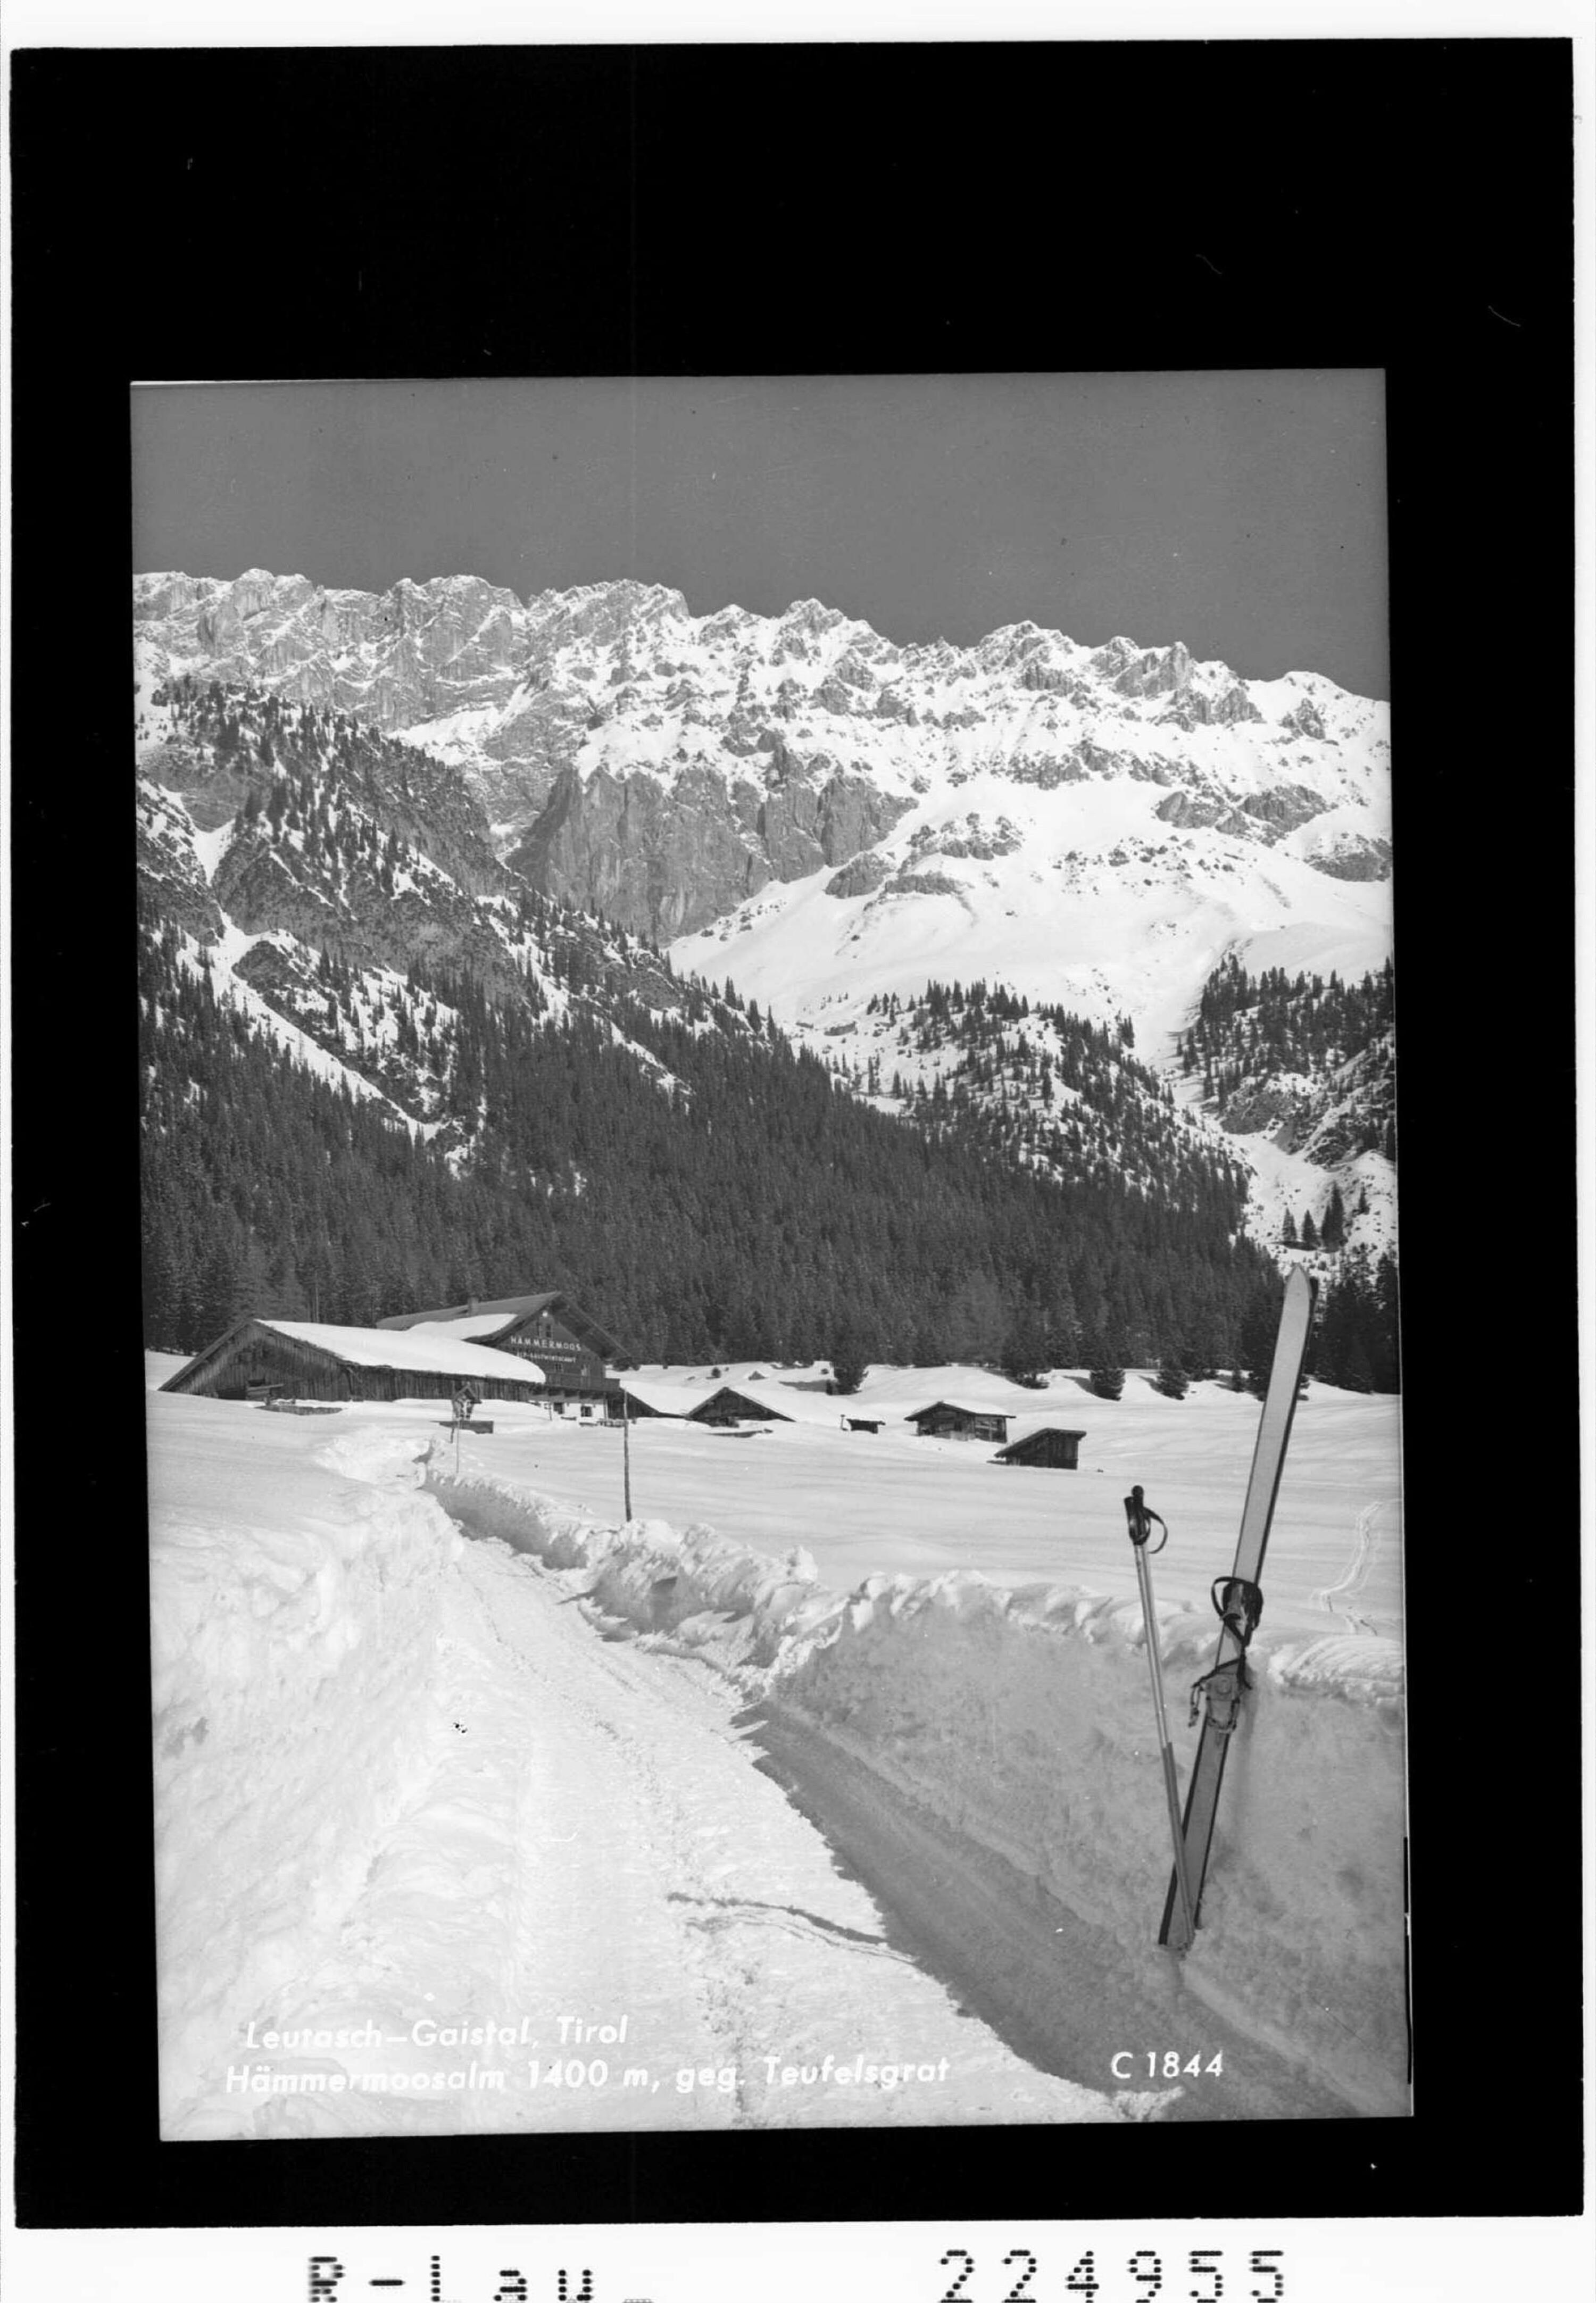 Leutasch - Gaistal / Tirol / Hämmermoosalm 1400 m gegen Teufelsgrat></div>


    <hr>
    <div class=